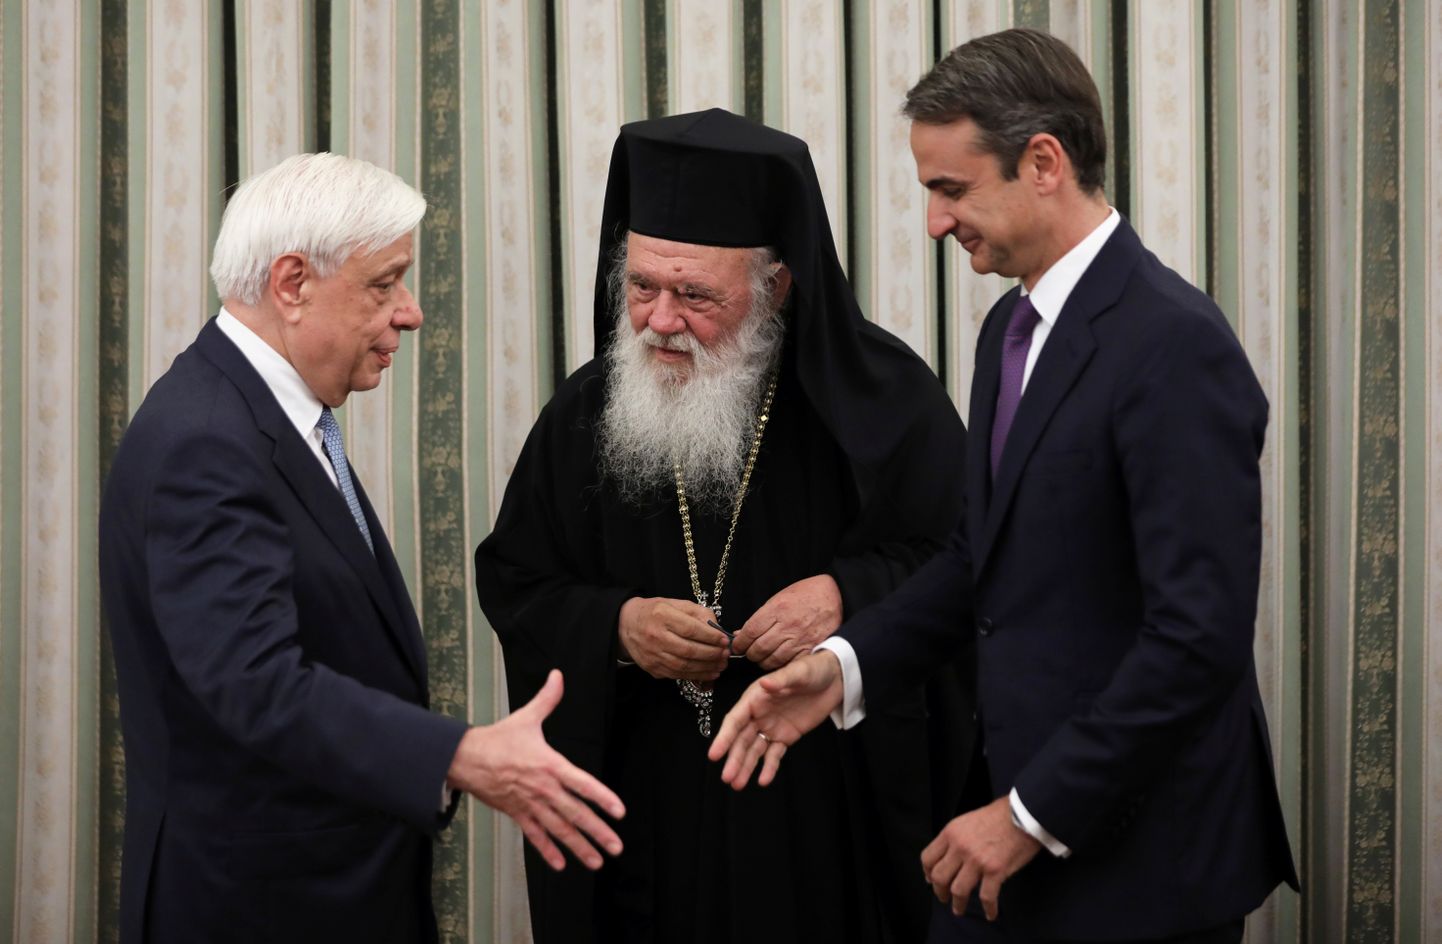 Kreeka uus peaminister Kyriakos Mitsotakis (paremal) surub kätt president Prokopis Pavlopoulosega. Keskel on peapiiskop Hieronymos.